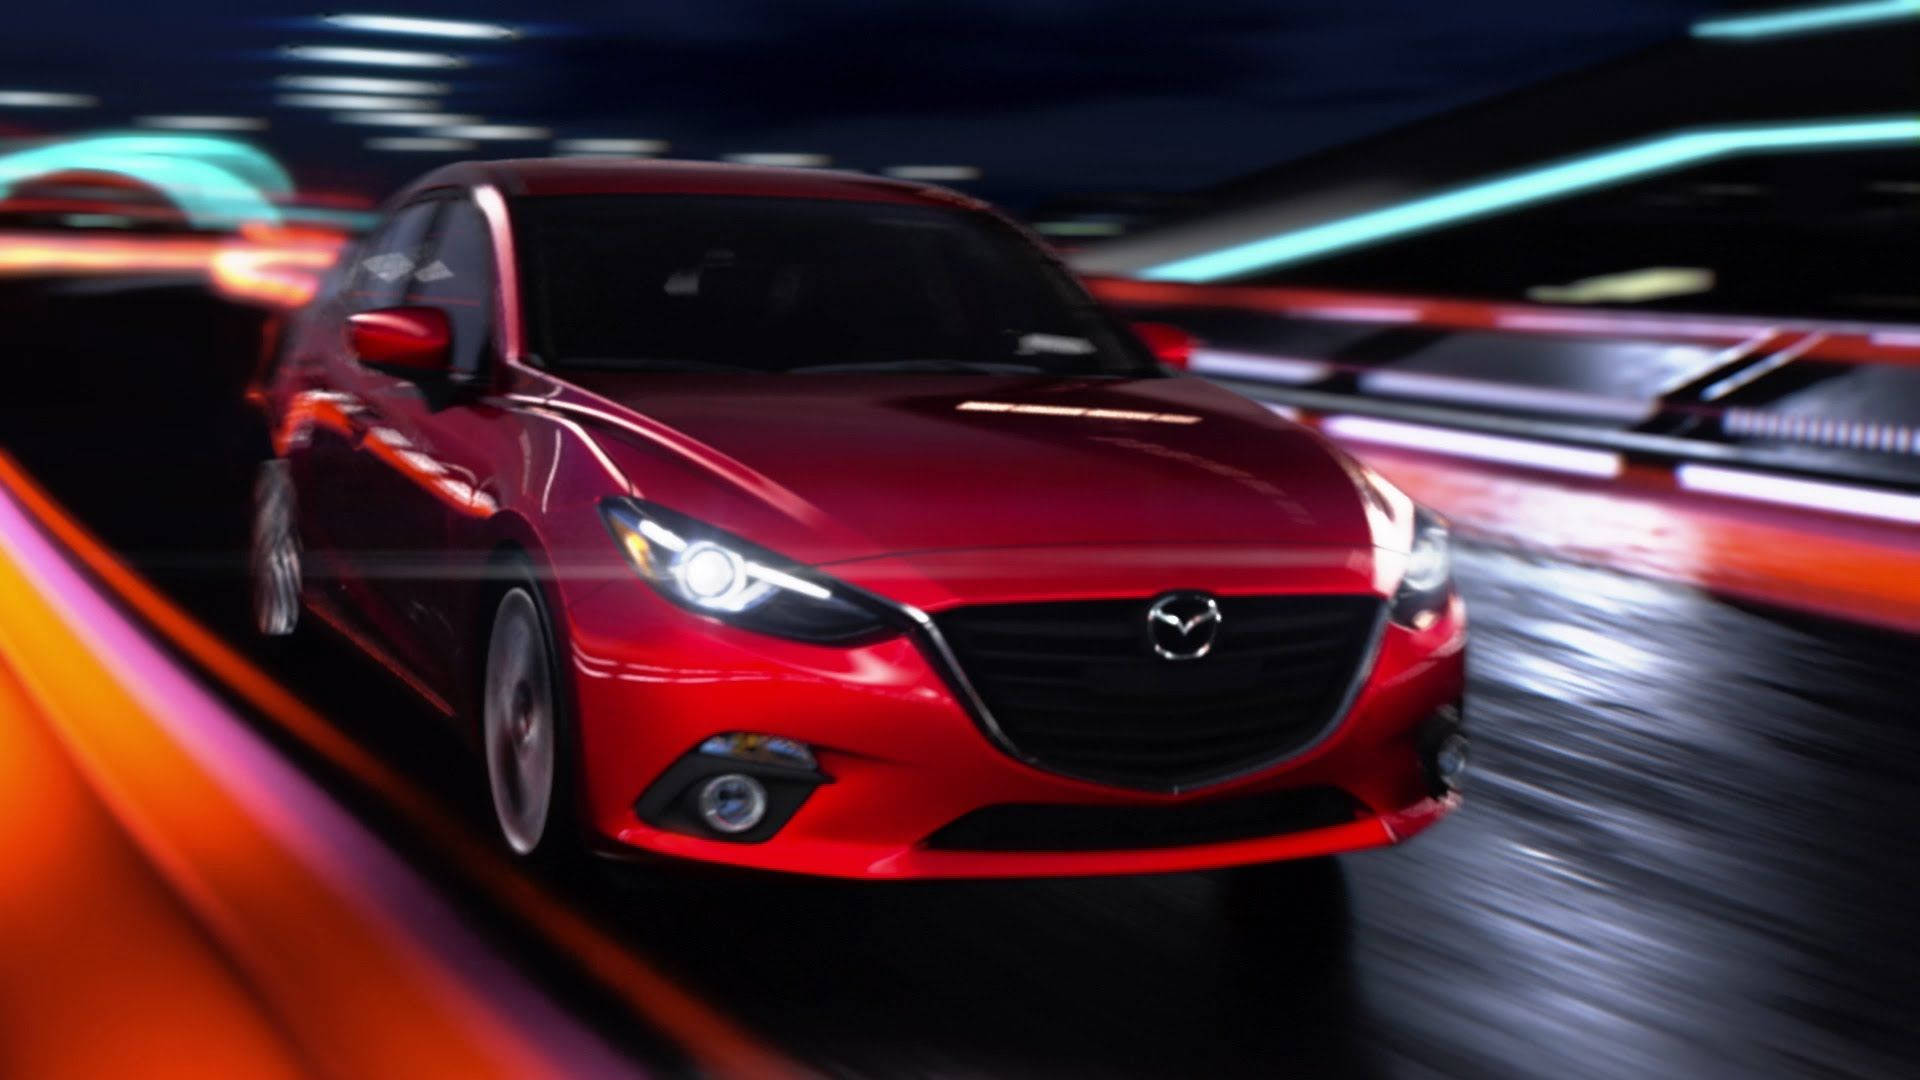 Red Mazda 3 in Motion Wallpaper